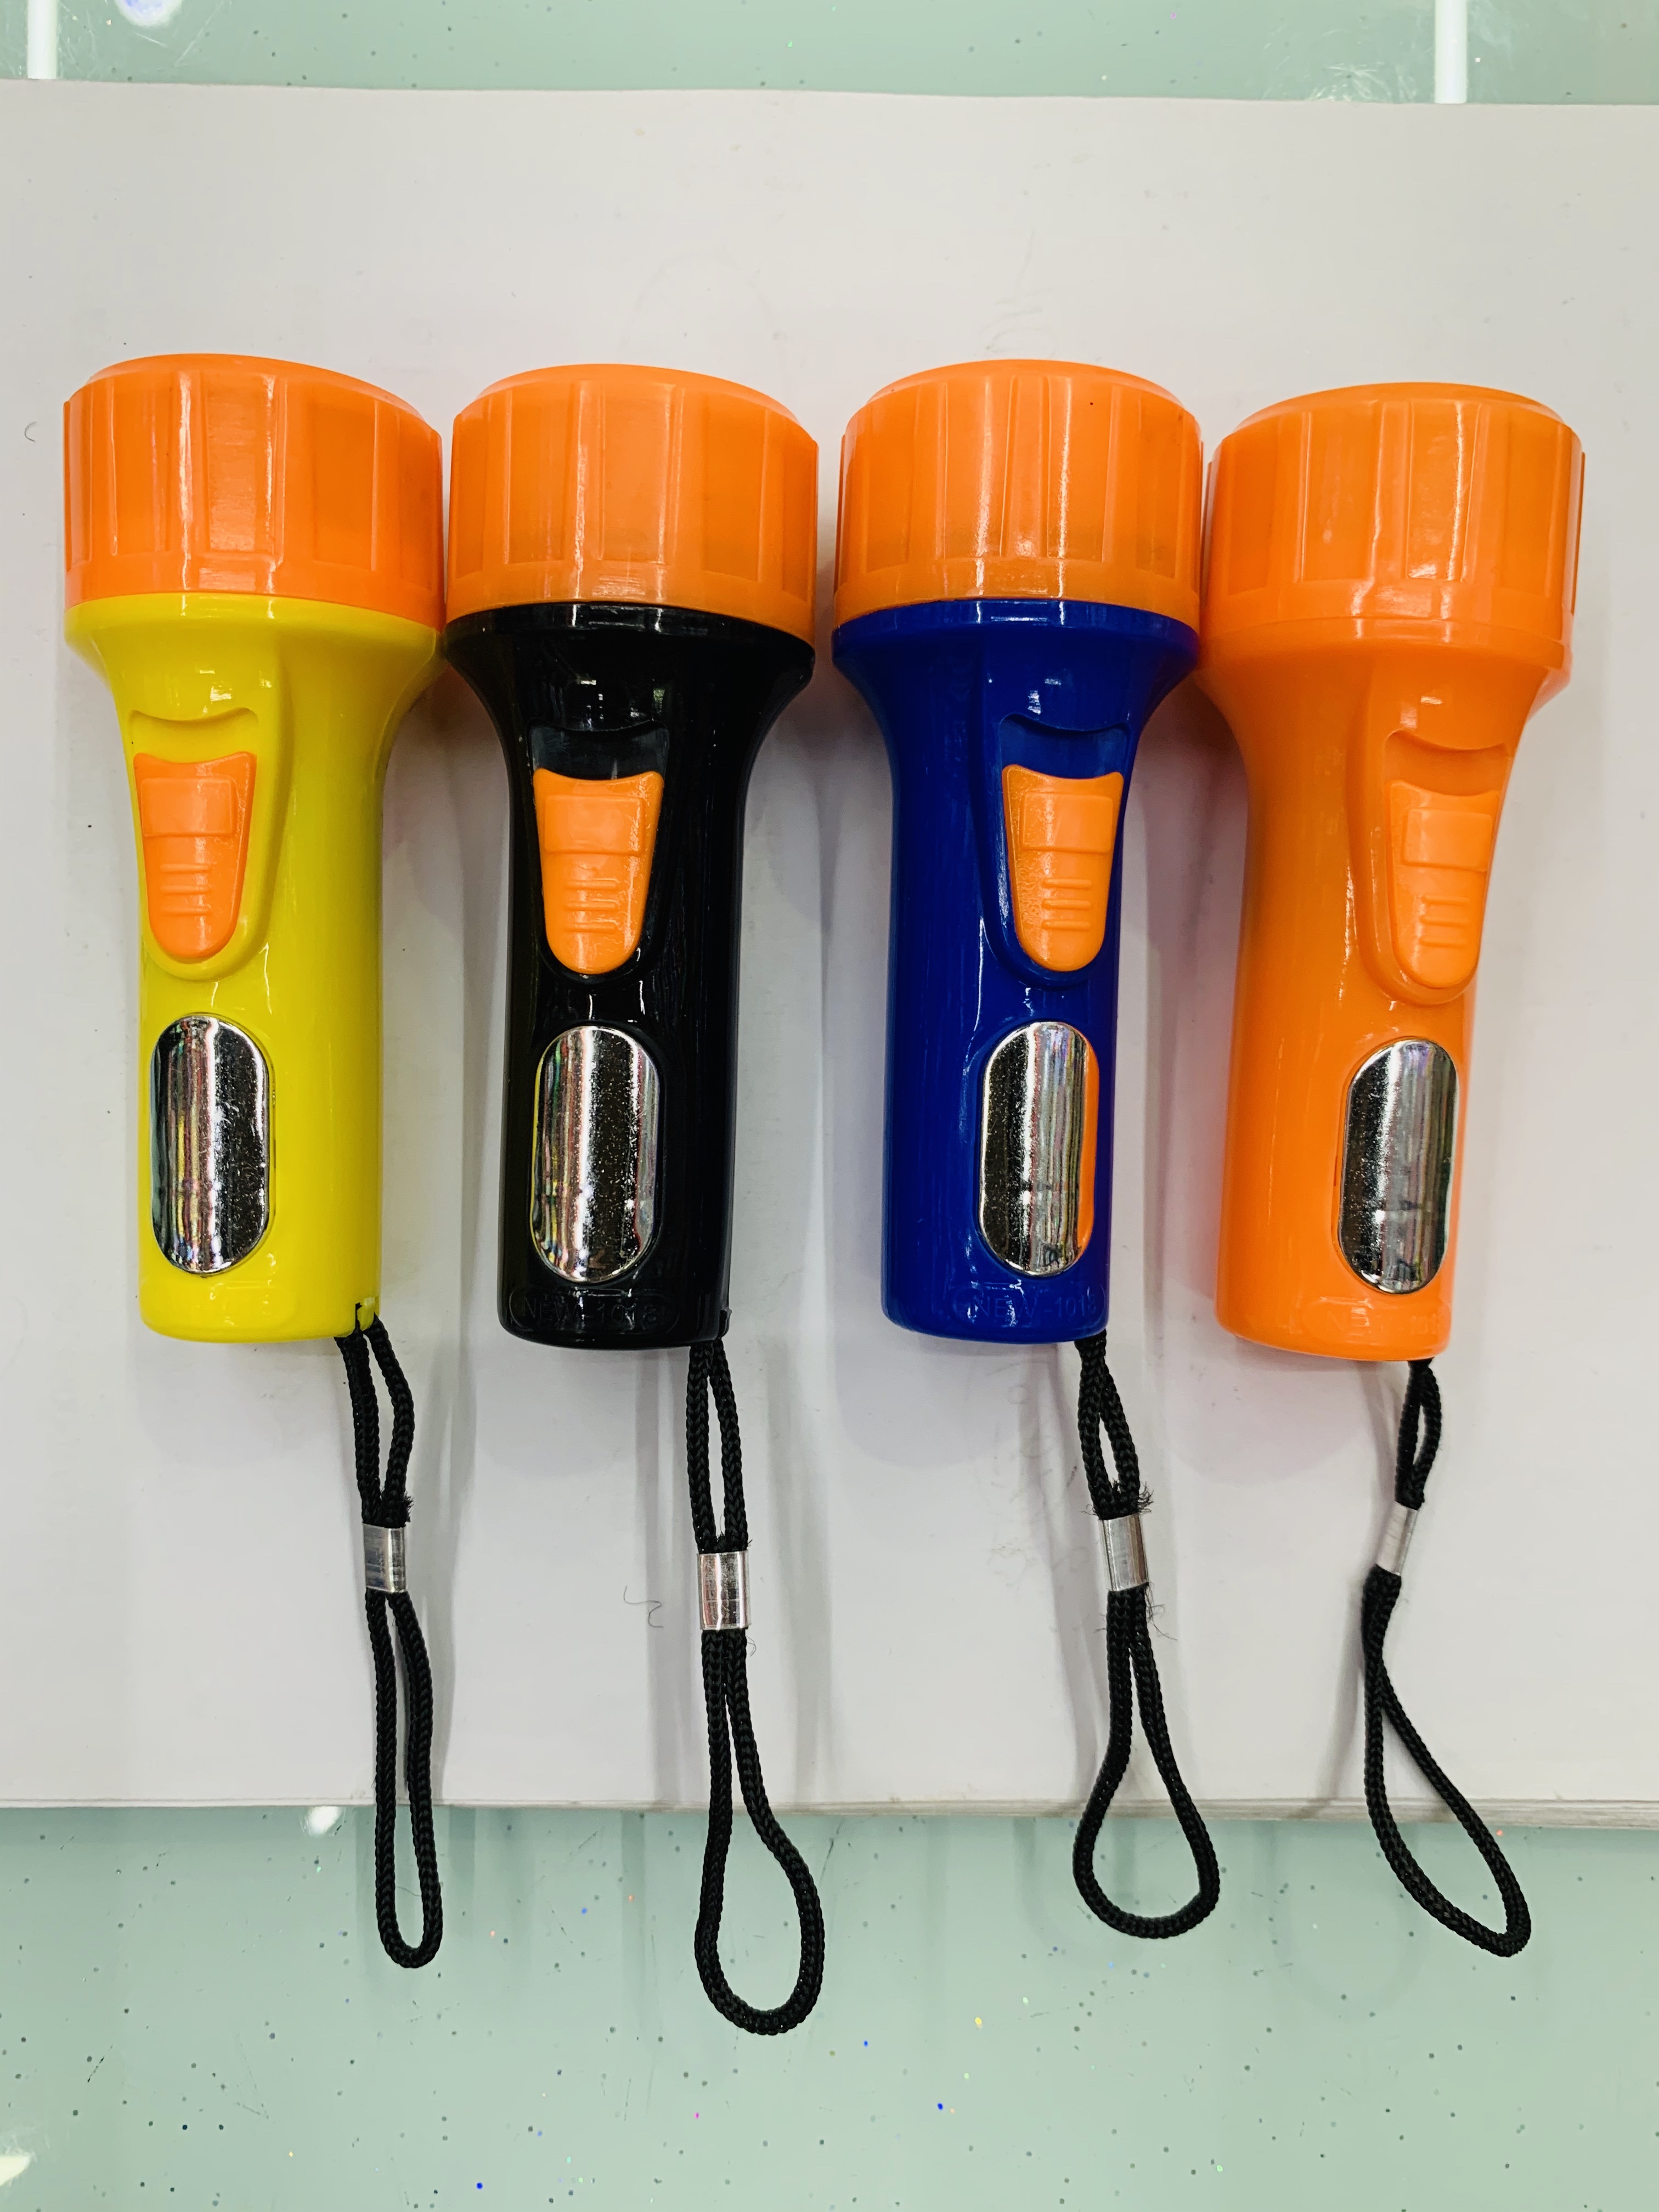 塑料手电筒 Led手电筒 安全方便携带手电筒 电子款电筒NEW-1018手电筒详情图1